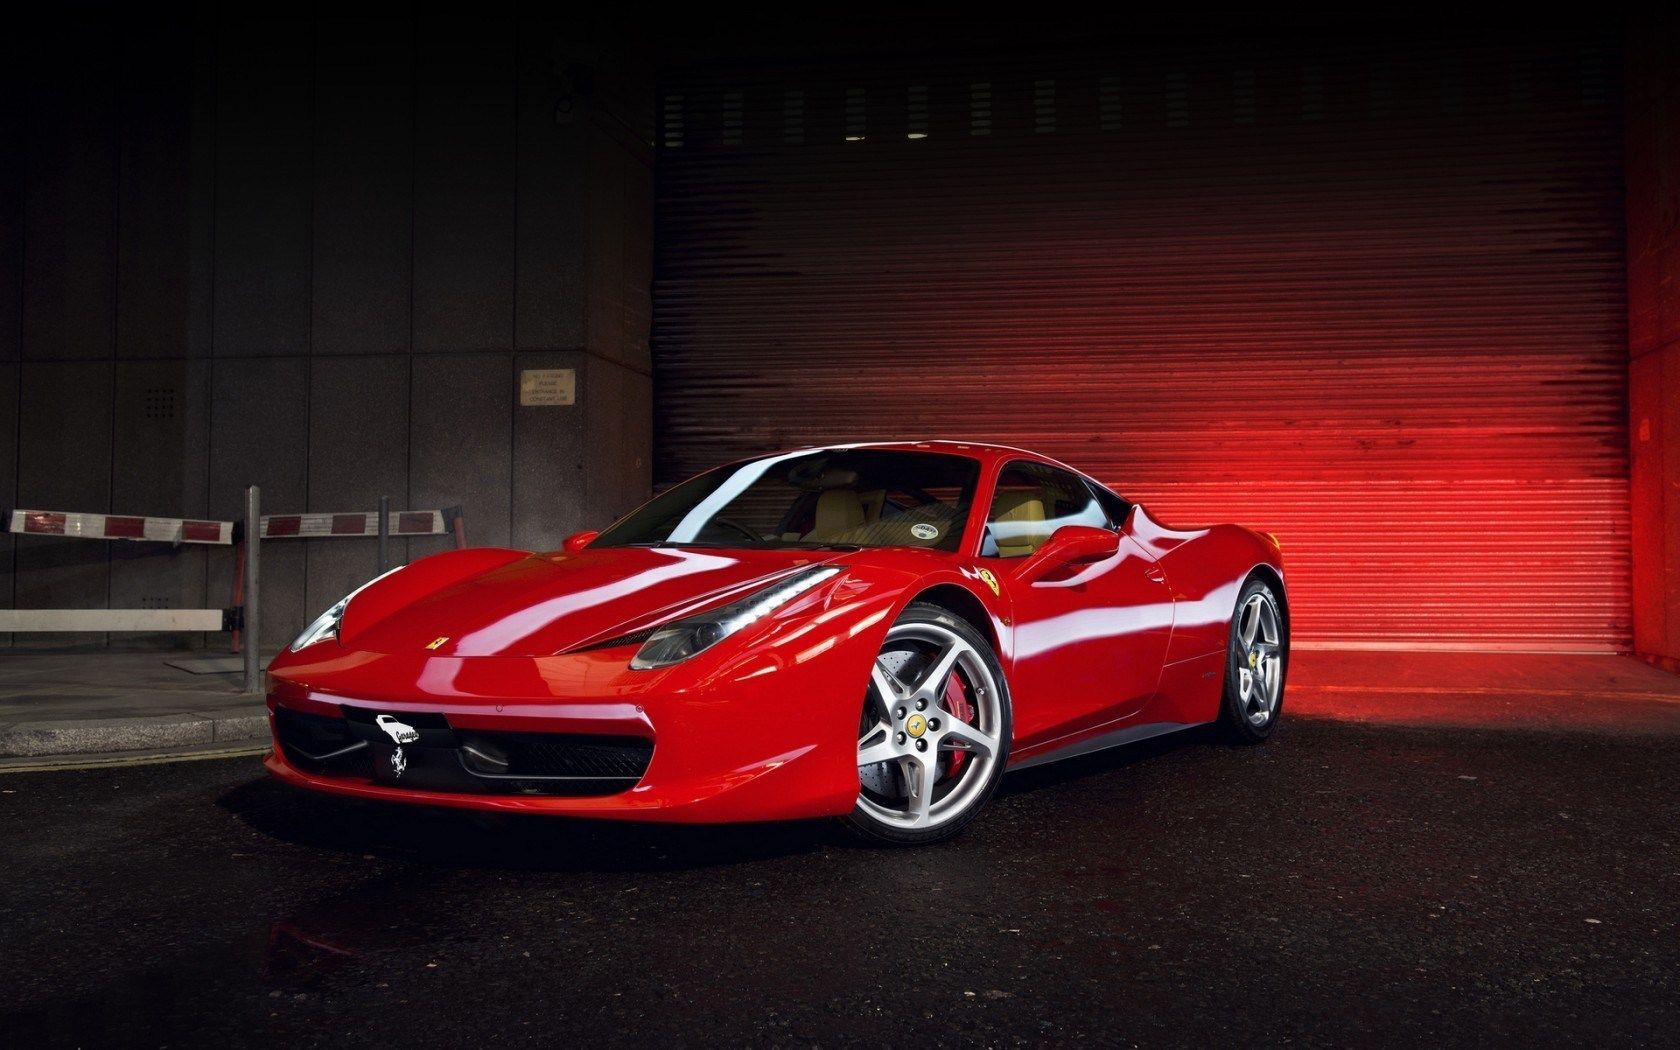 Ferrari 458 Italia Red Wallpaper Hd | Best HD Wallpapers